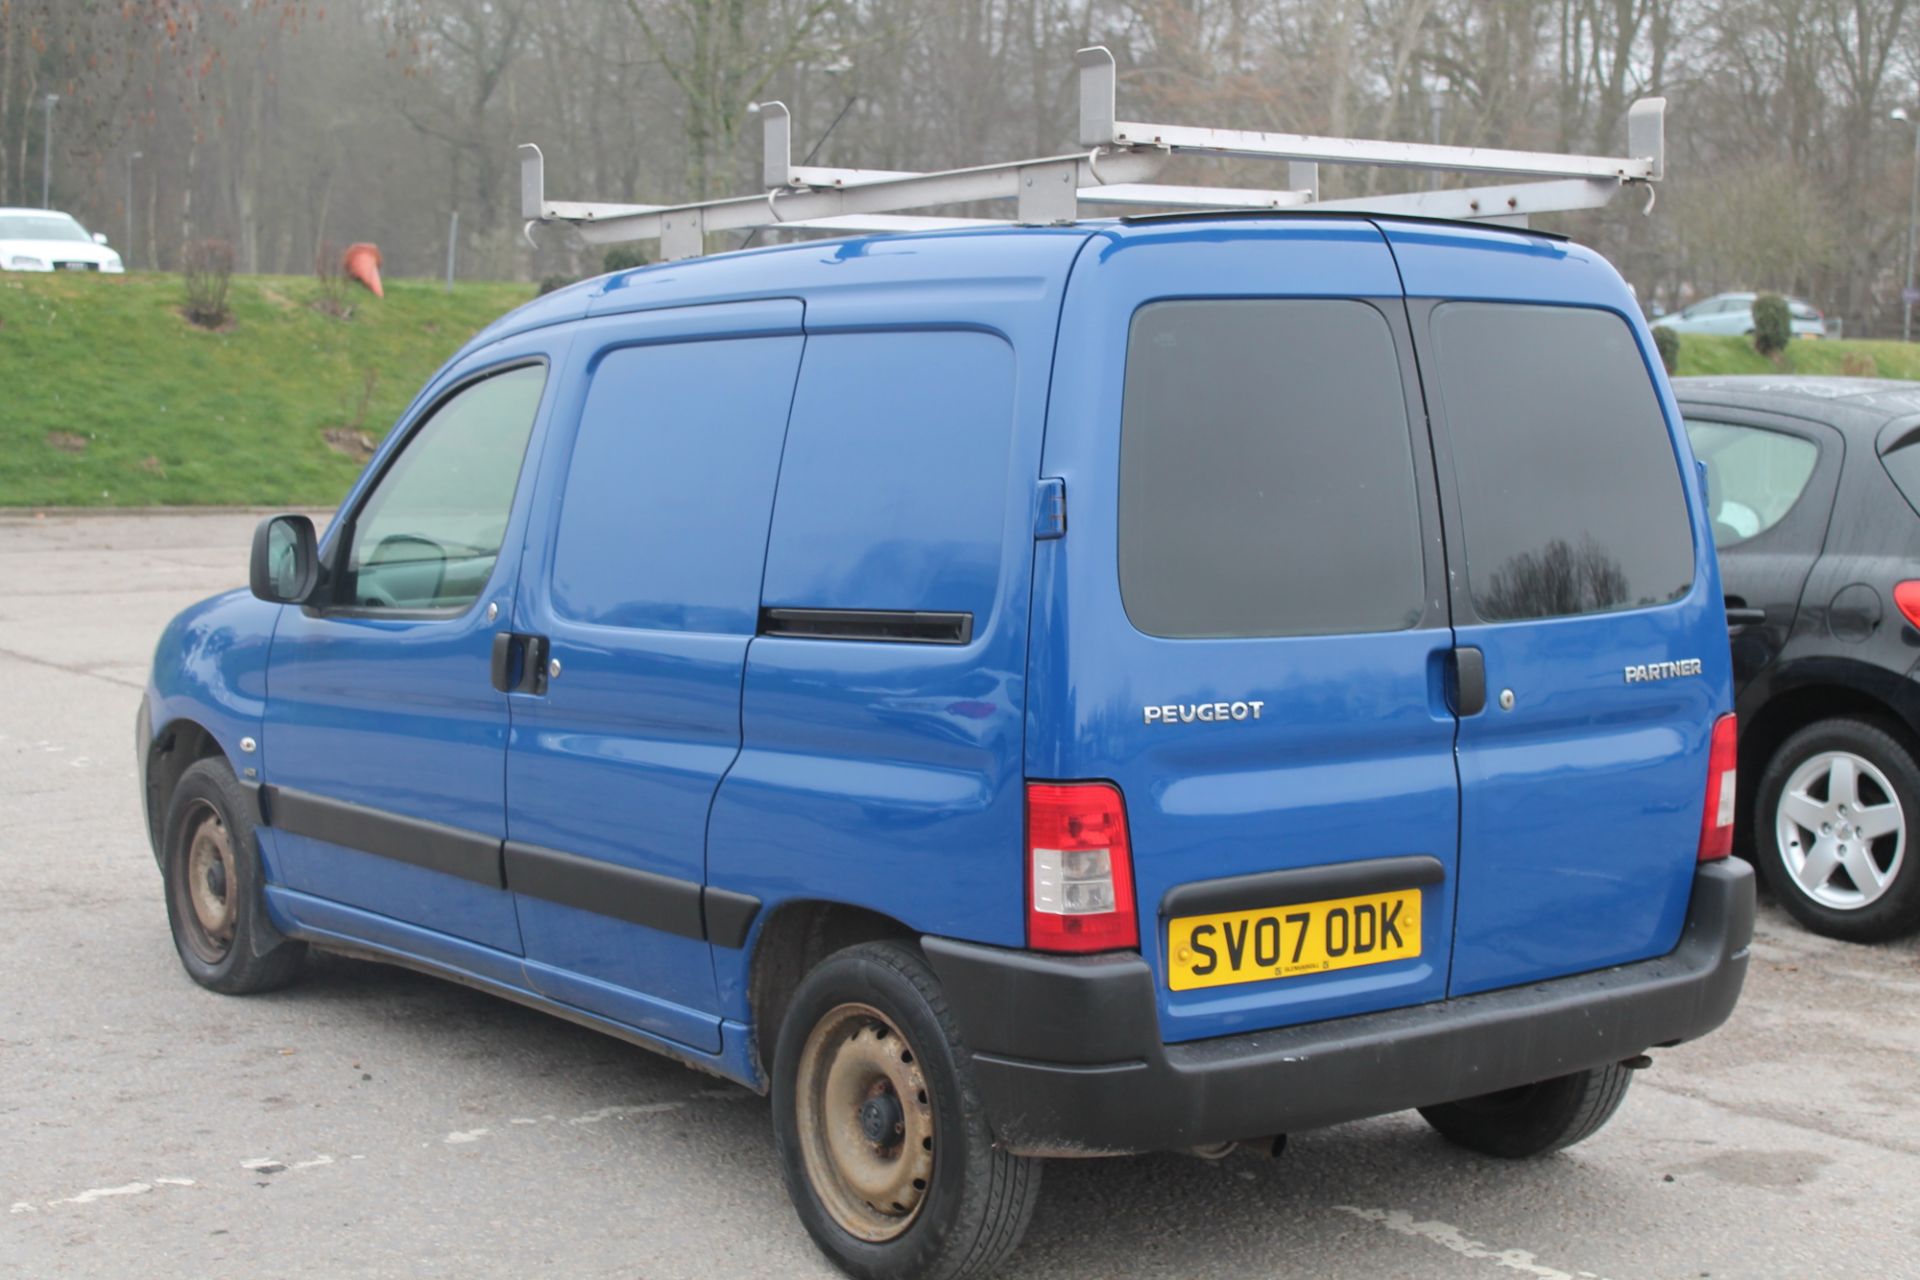 Peugeot Partner Lx600 66kw - 1560cc 2 Door Van - Image 3 of 8